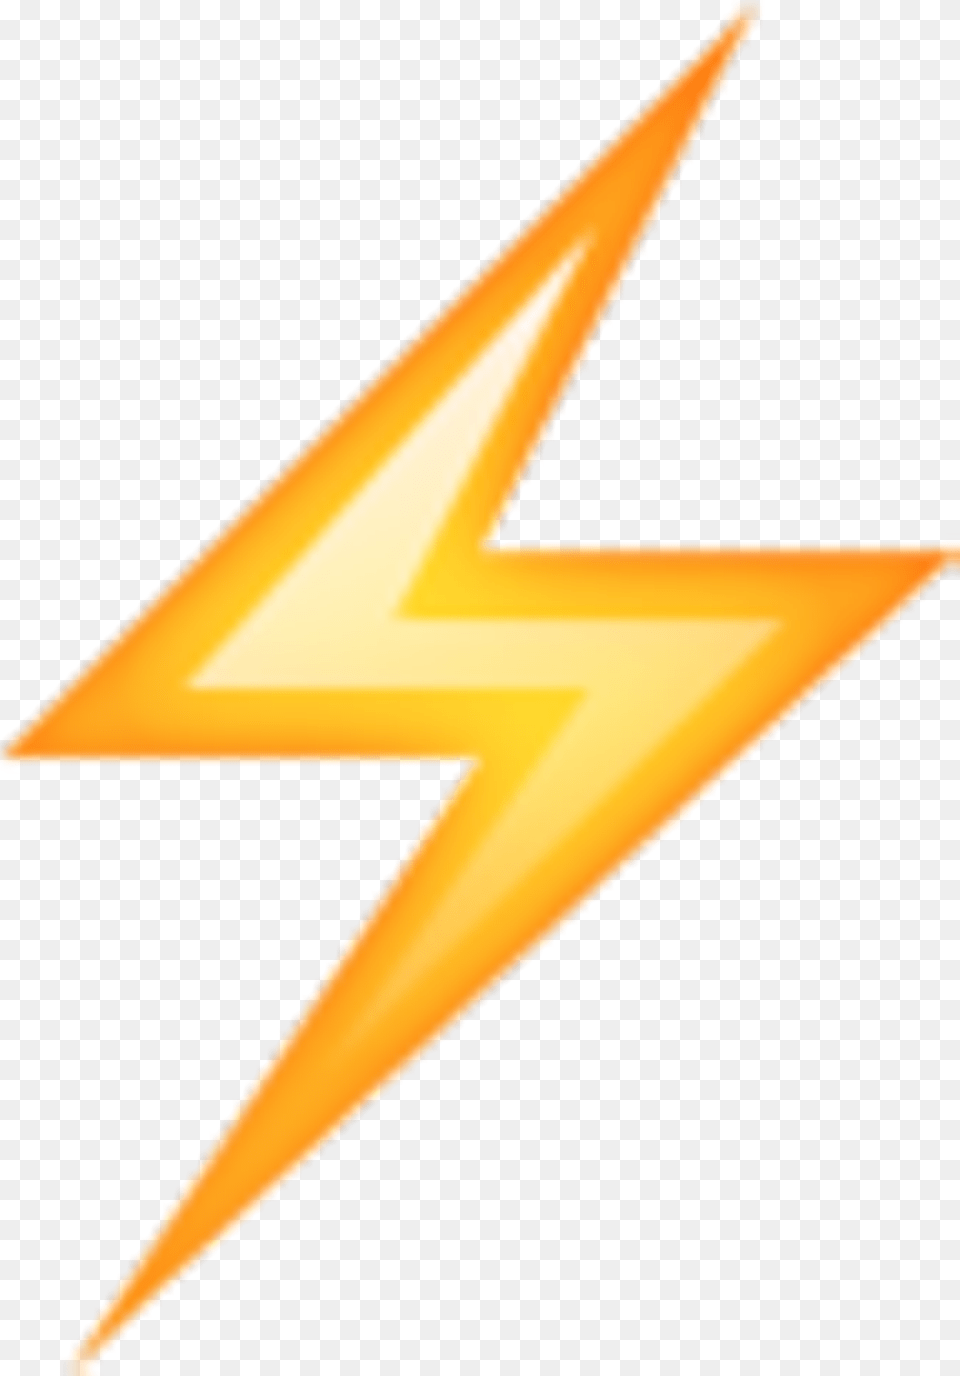 Rayito Rayo Ryan Thunder Emoji Whatsapp Tumblr Lightning Emoji, Star Symbol, Symbol, Lighting Png